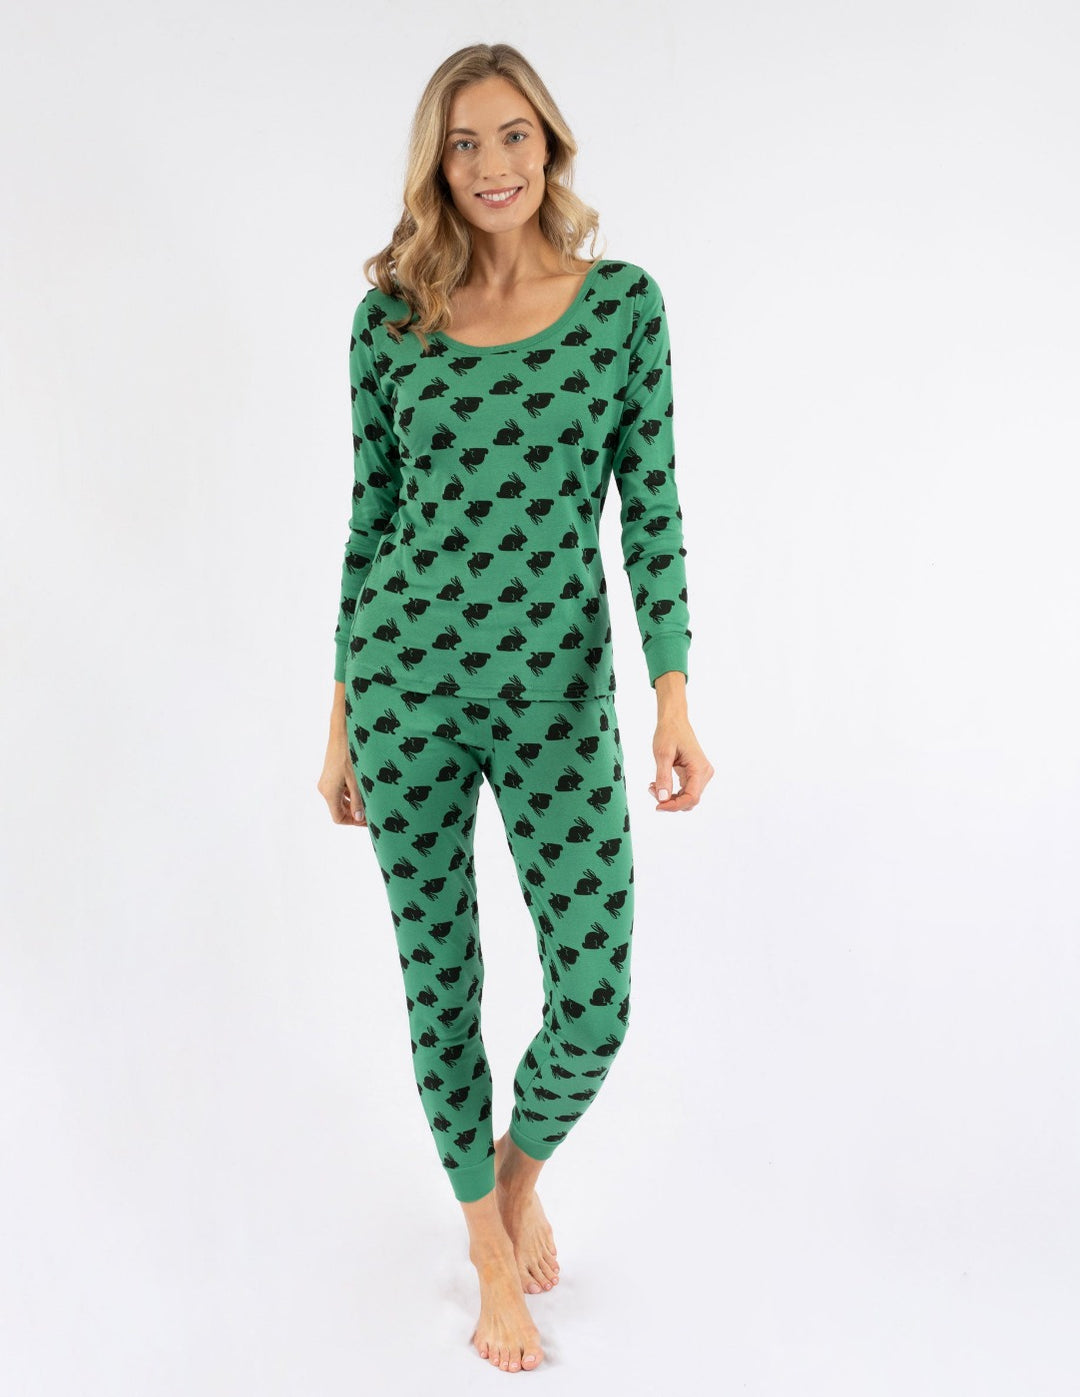 Grateful Dead Pajamas in Women's Cotton Pajamas, Pajamas for Women